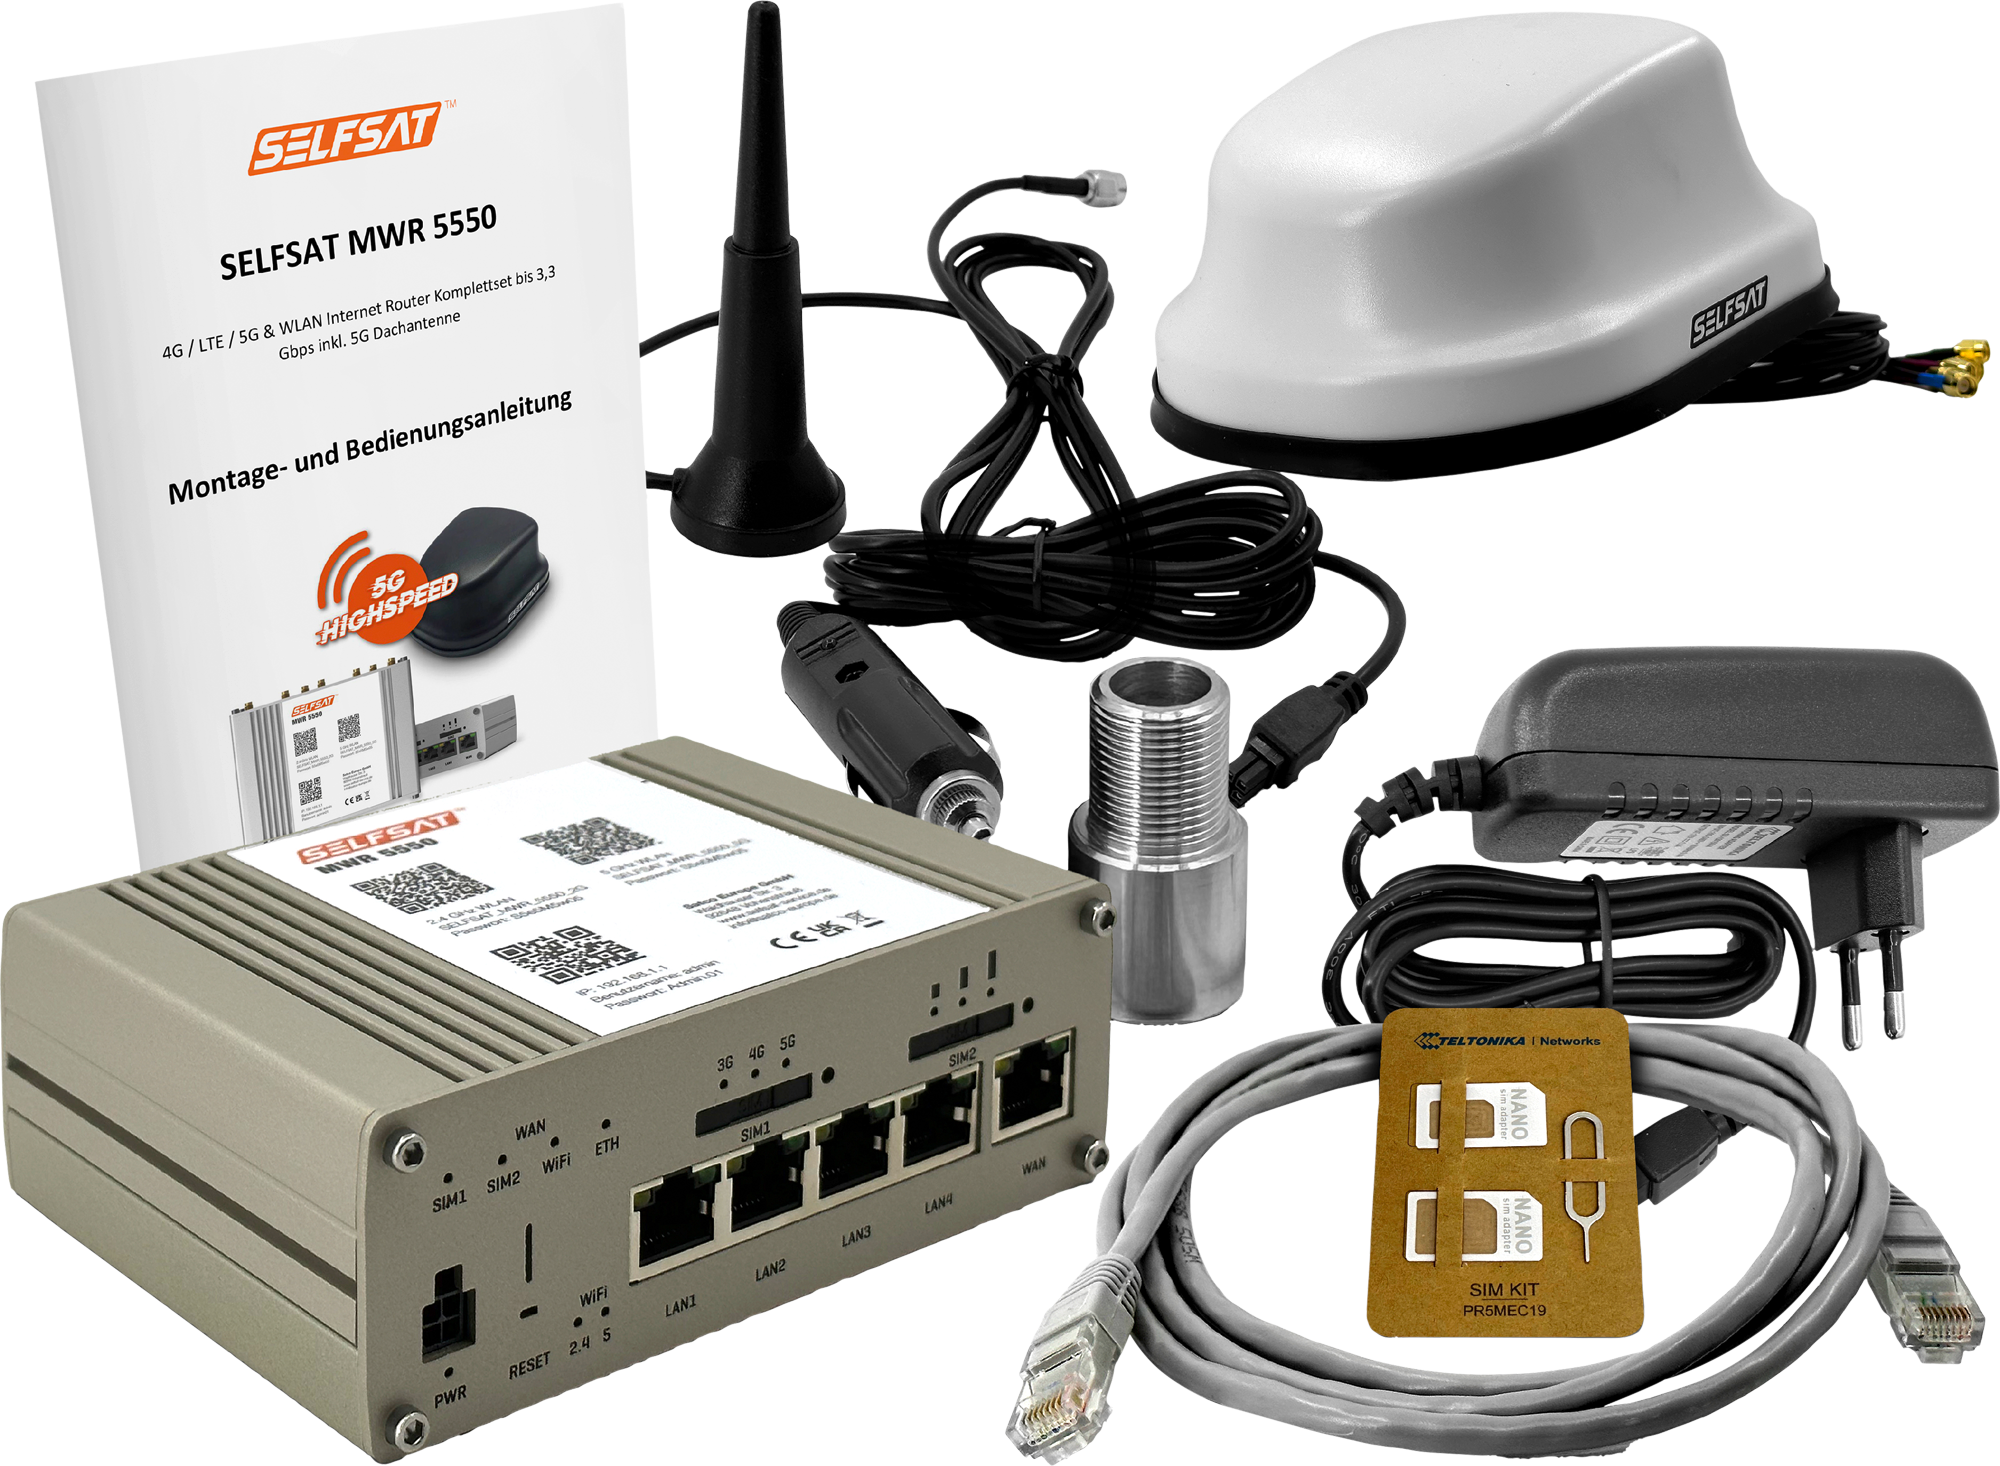 Selfsat MWR 5550 4G / LTE / 5G und WLAN Internet Router inklusive 5G Dachantenne bis 3,3 Gps